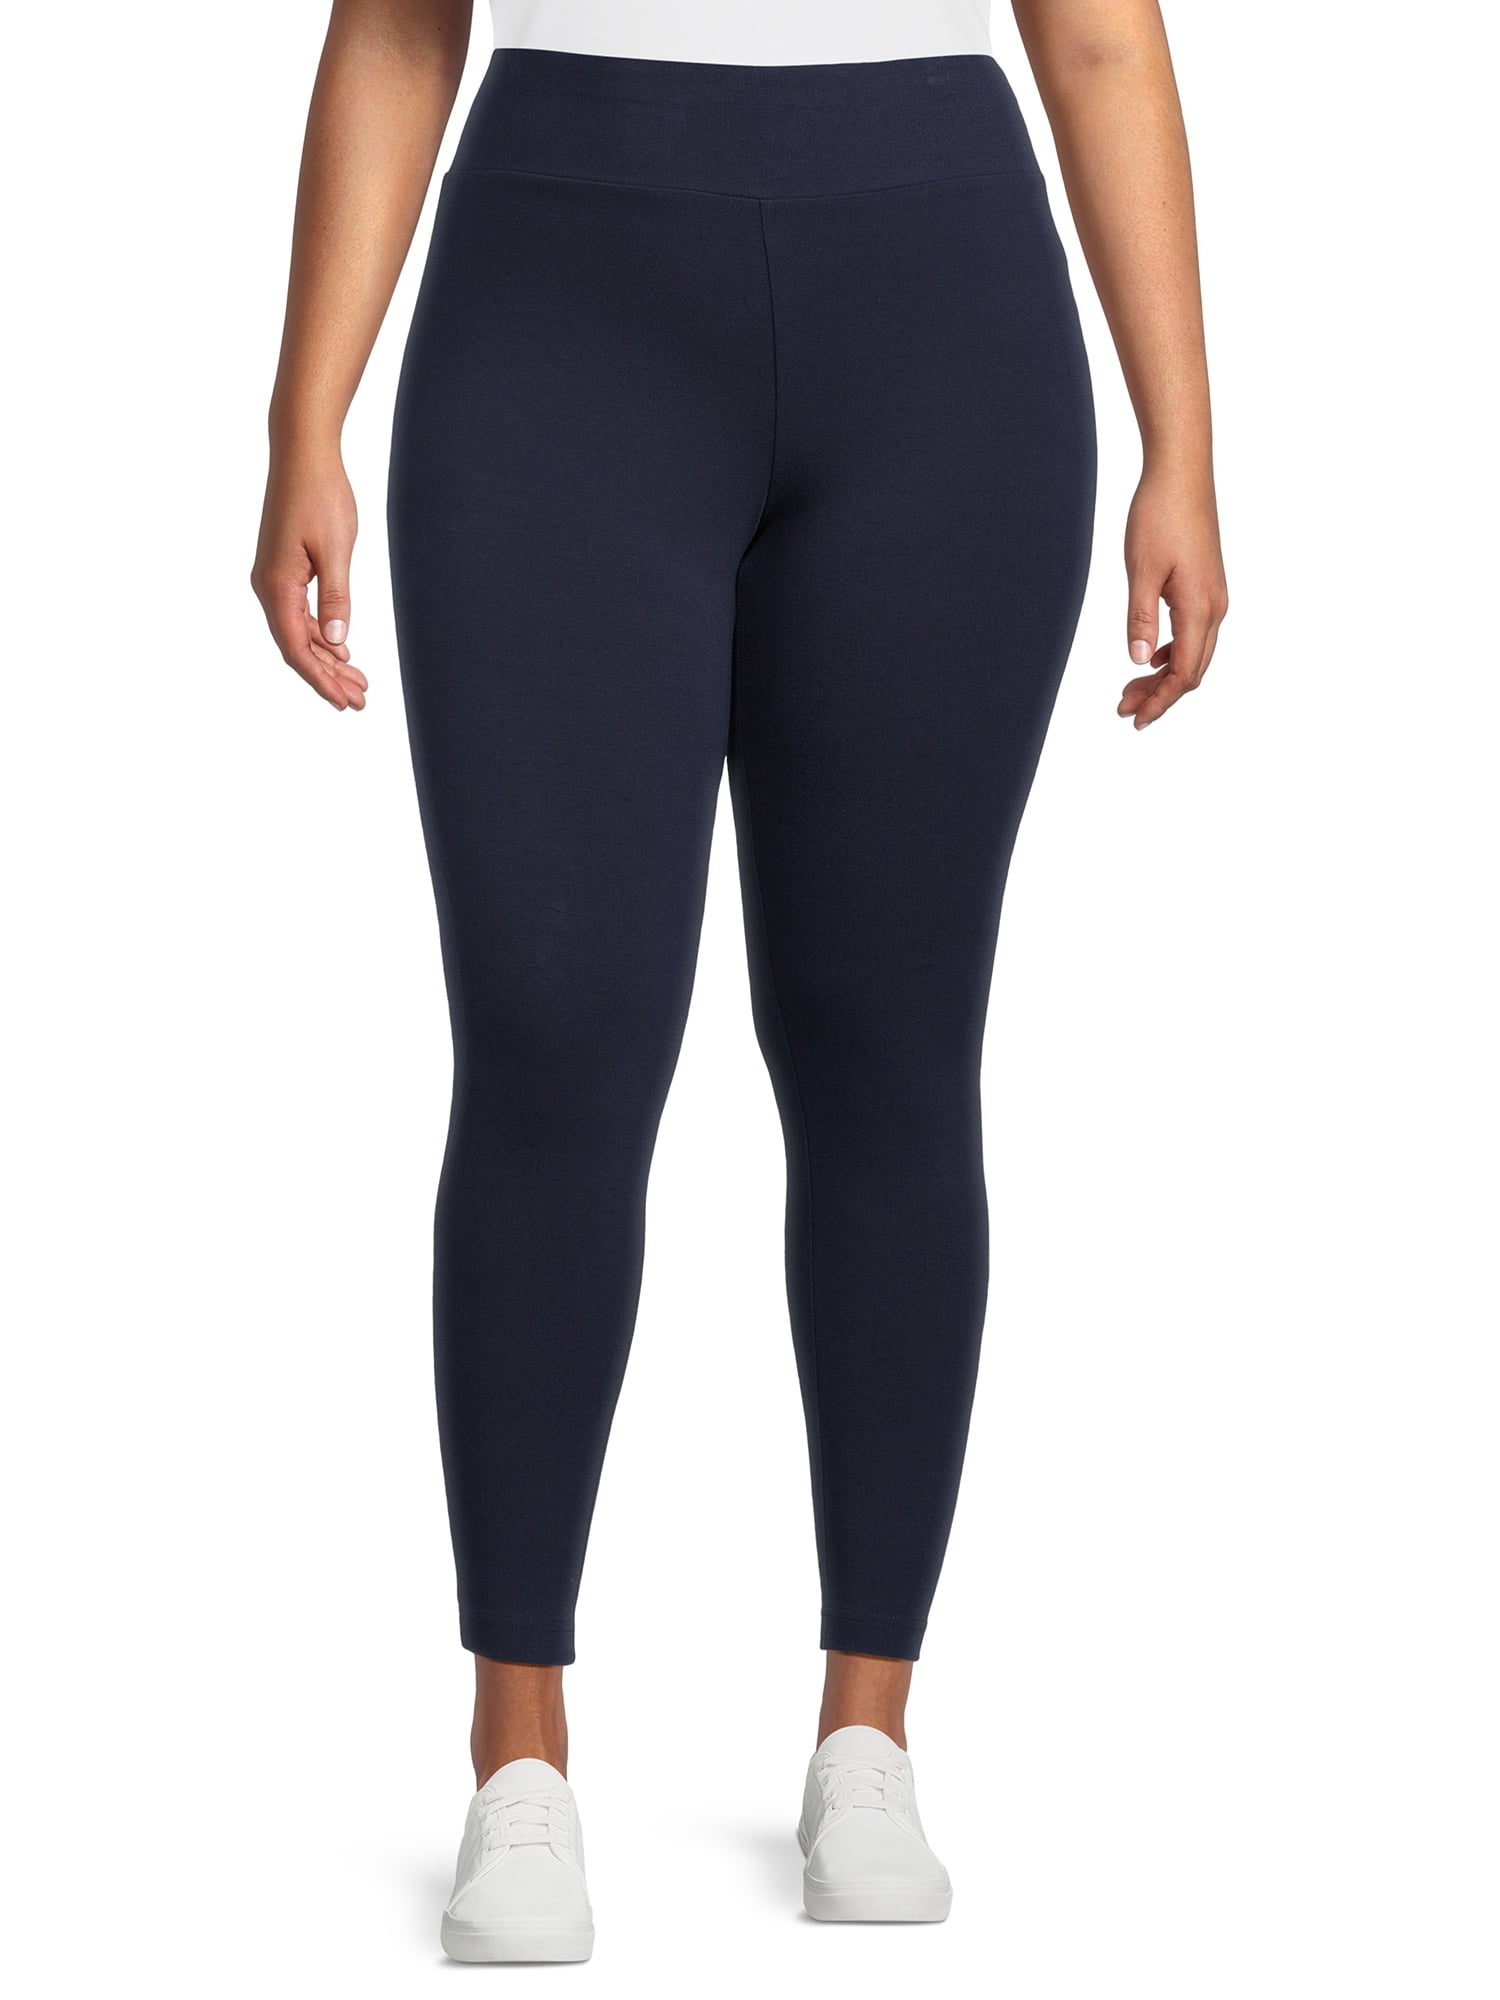 M&S Women's 2 Pack High Waisted Leggings, Size 10, Blue/Black -  HelloSupermarket